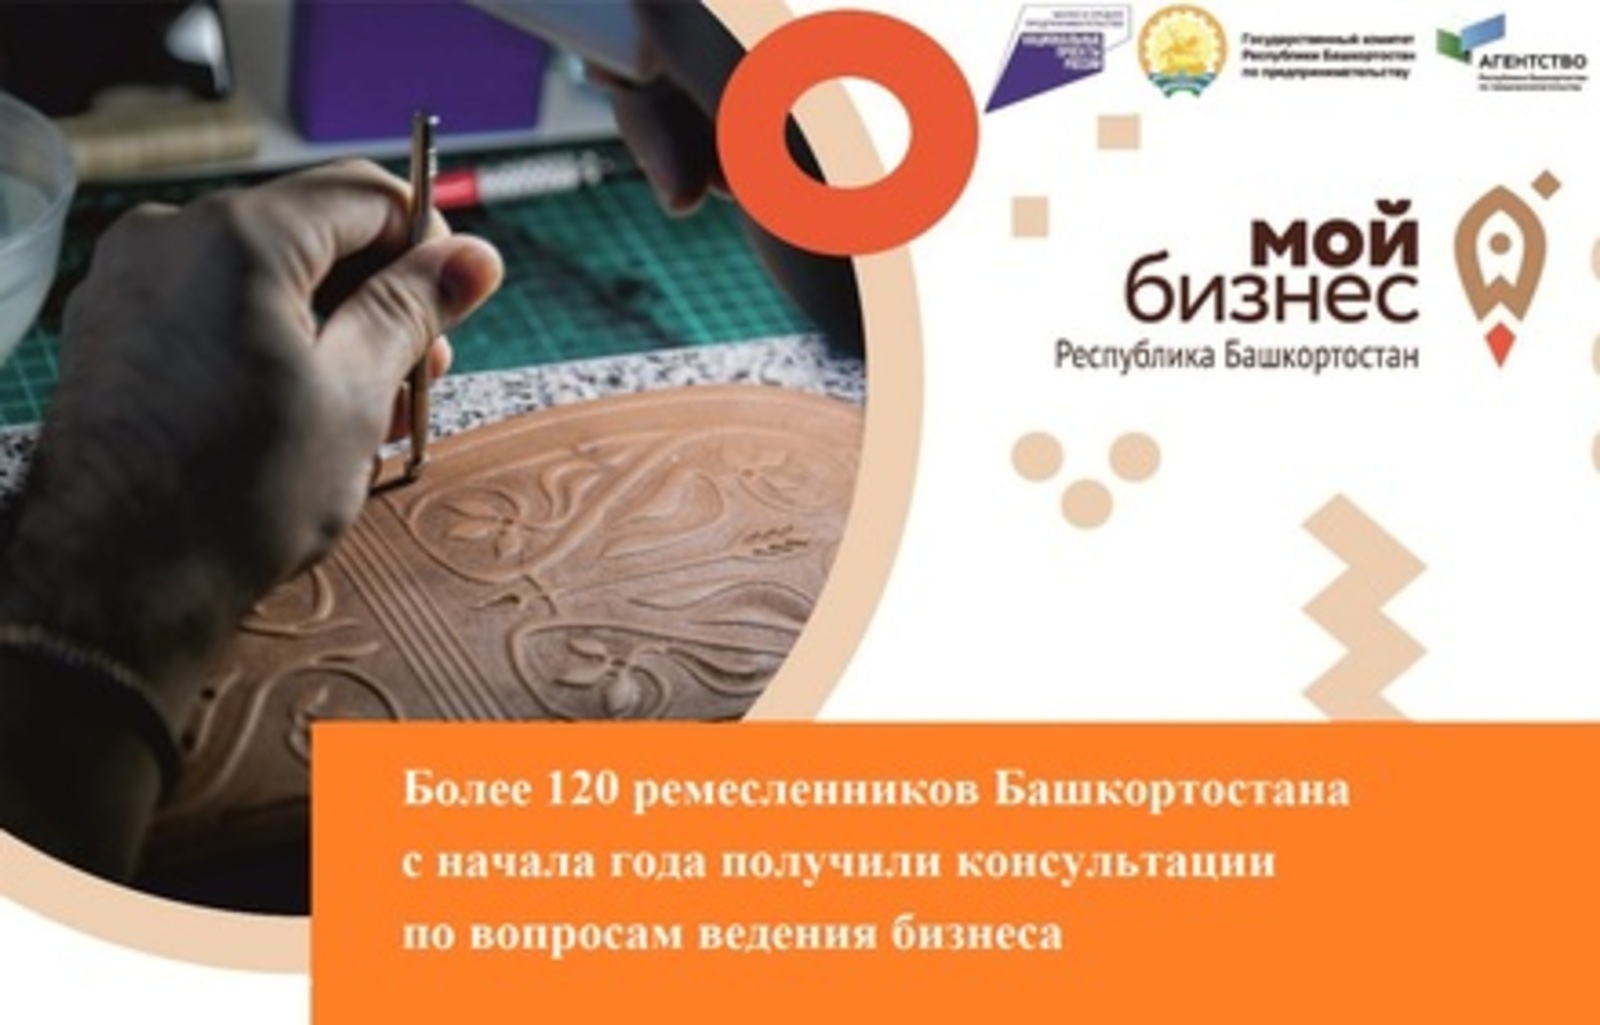 Более 120 ремесленников Башкирии получили консультации по вопросам ведения бизнеса